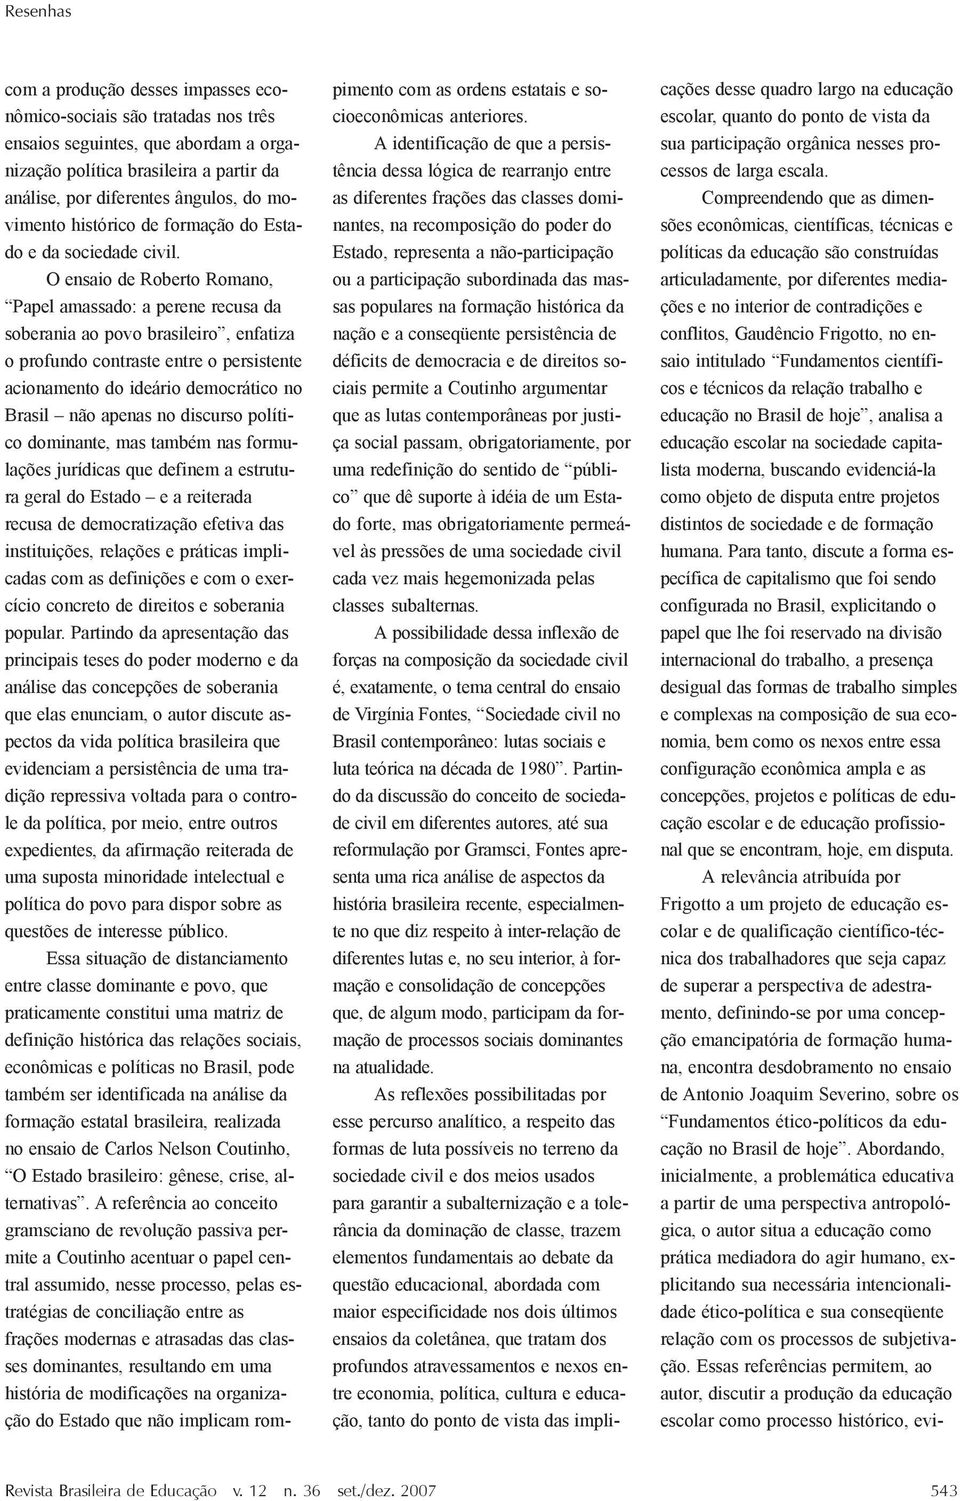 O ensaio de Roberto Romano, Papel amassado: a perene recusa da soberania ao povo brasileiro, enfatiza o profundo contraste entre o persistente acionamento do ideário democrático no Brasil não apenas